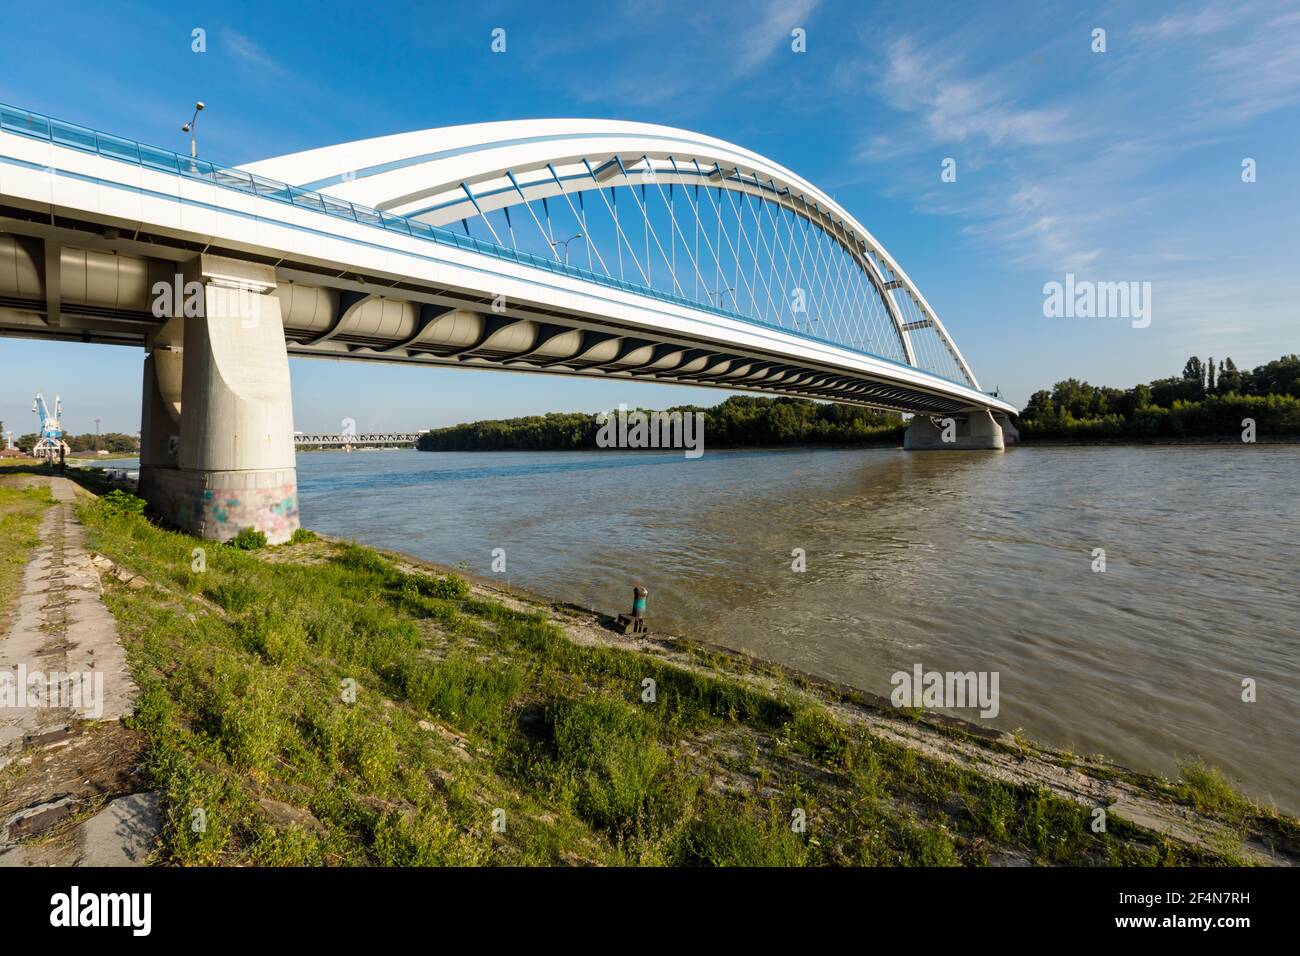 Apollo bridge on Danube river in Bratislava Stock Photo